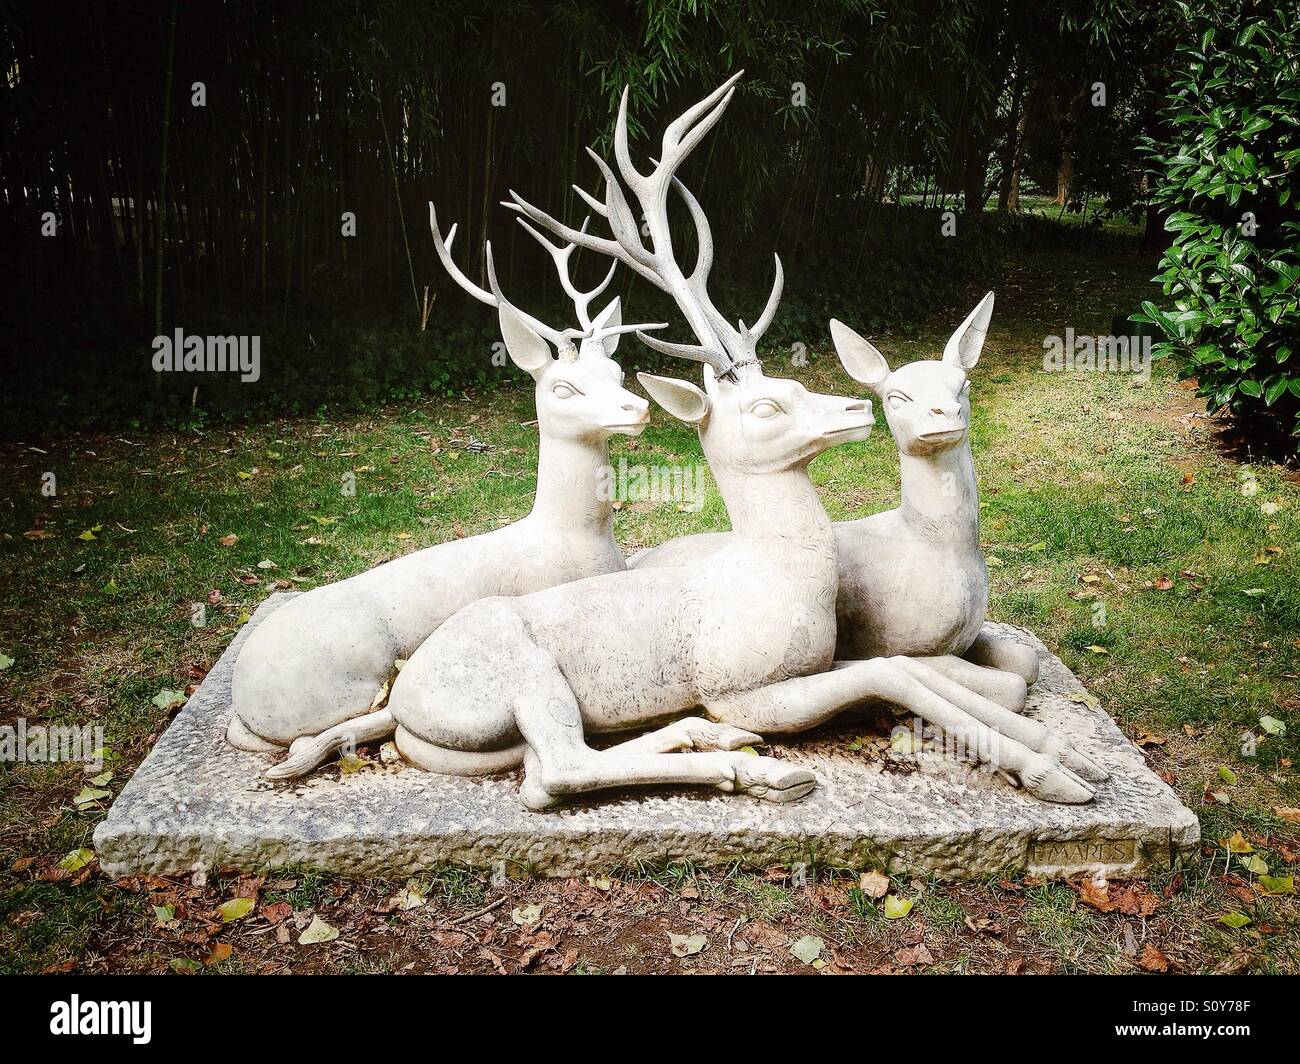 Deer sculpture Stock Photo